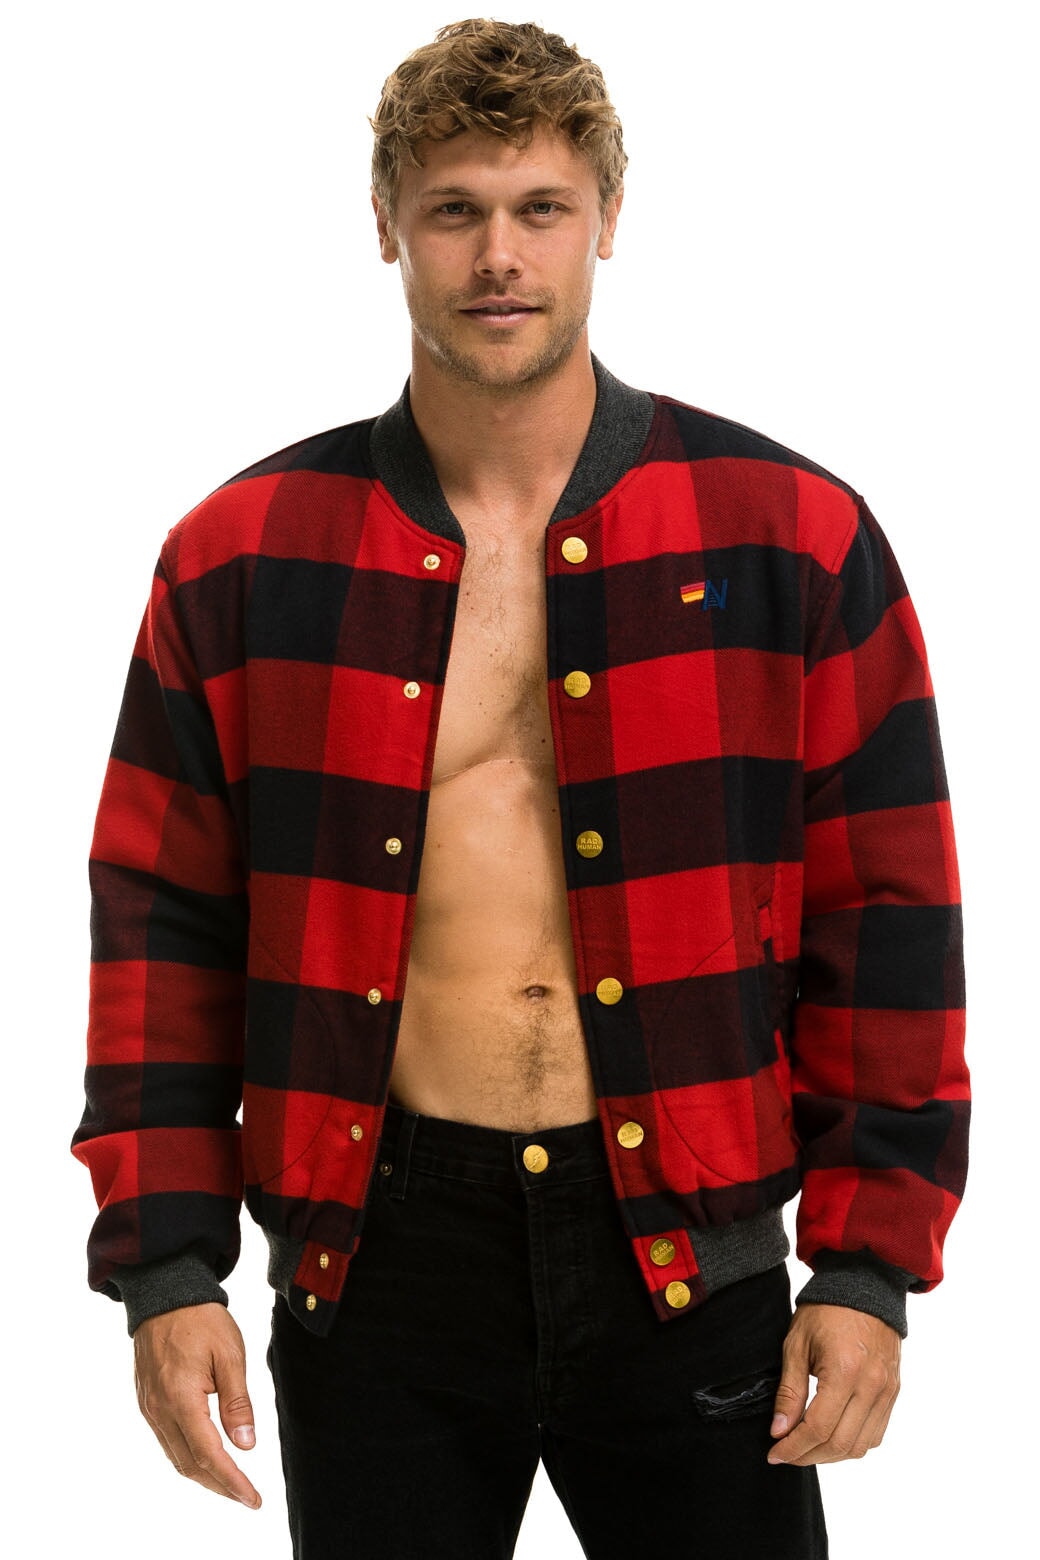 Buffalo Plaid Hoodie Red & Black Checkered Sweatshirt 